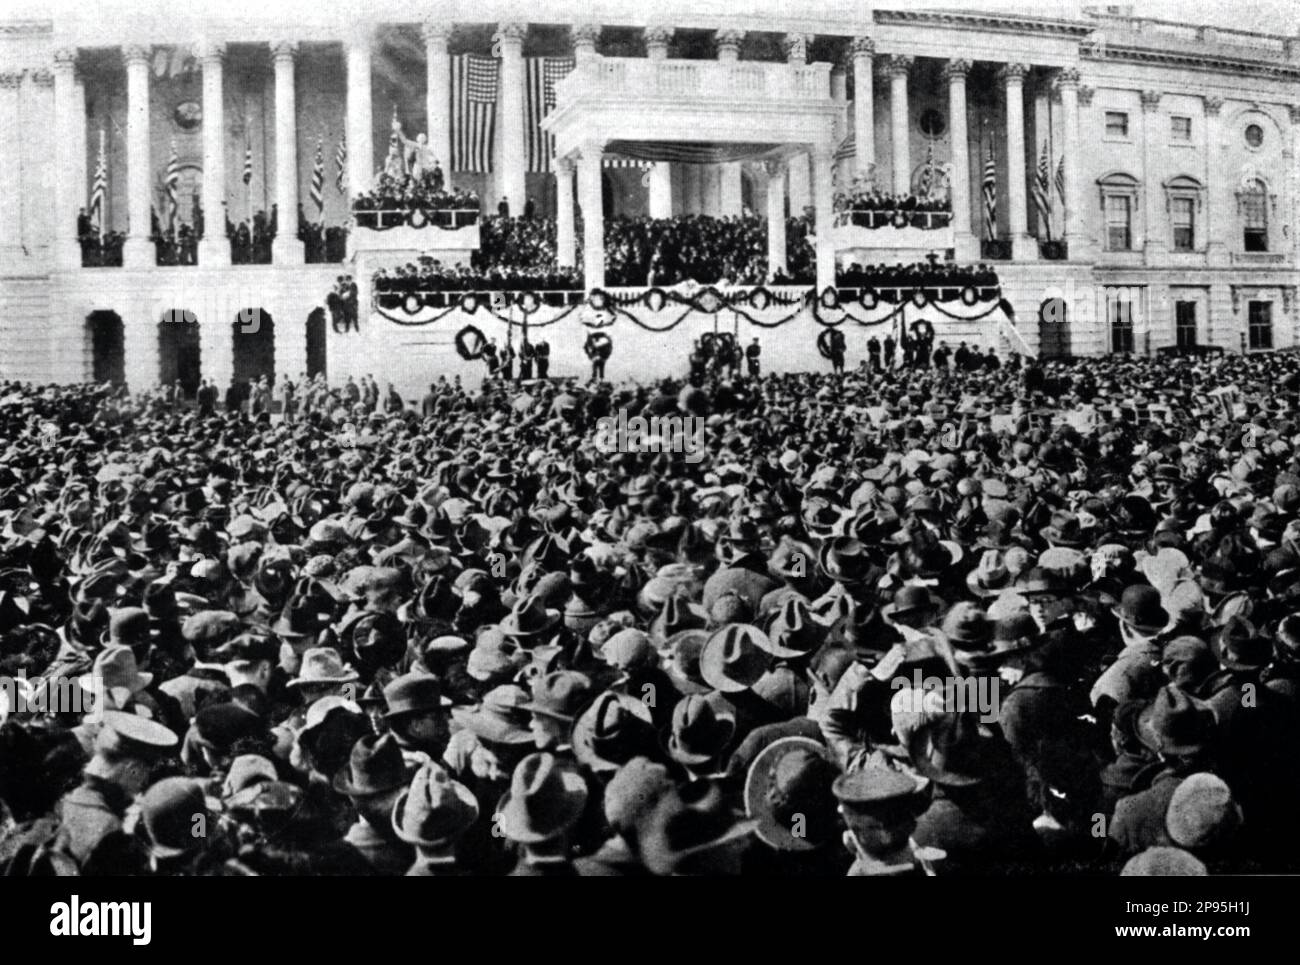 Inaugurazione del Presidente Warren G. Harding, 3 marzo 1921 . Warren Gamaliel Harding ( 1865 – 1923 ) è stato un politico americano e il 29th presidente degli Stati Uniti, dal 1921 al 1923, quando divenne il sesto presidente a morire in carica. - Presidente della Repubblica - USA -Cerimonia d' insedimento - STATI UNITI - STATI Uniti - STATI Uniti --- Archivio GBB Foto Stock